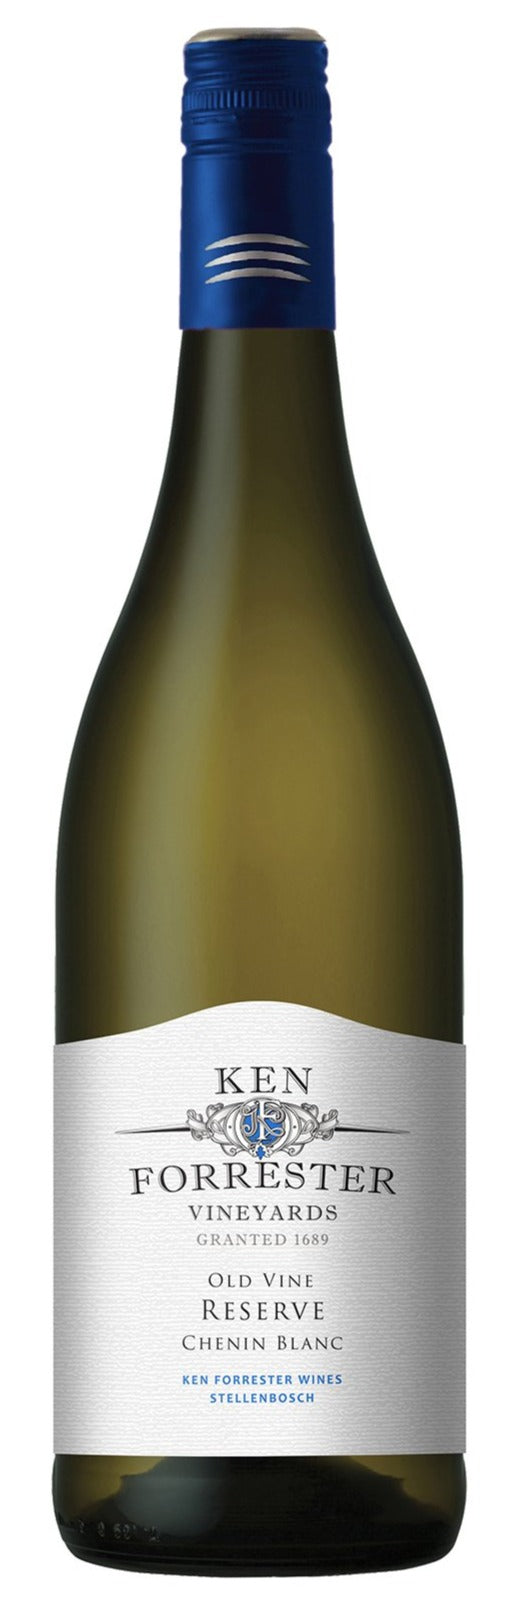 KEN FORRESTER Old Vine Reserve Chenin Blanc 750ml - Together Store South Africa